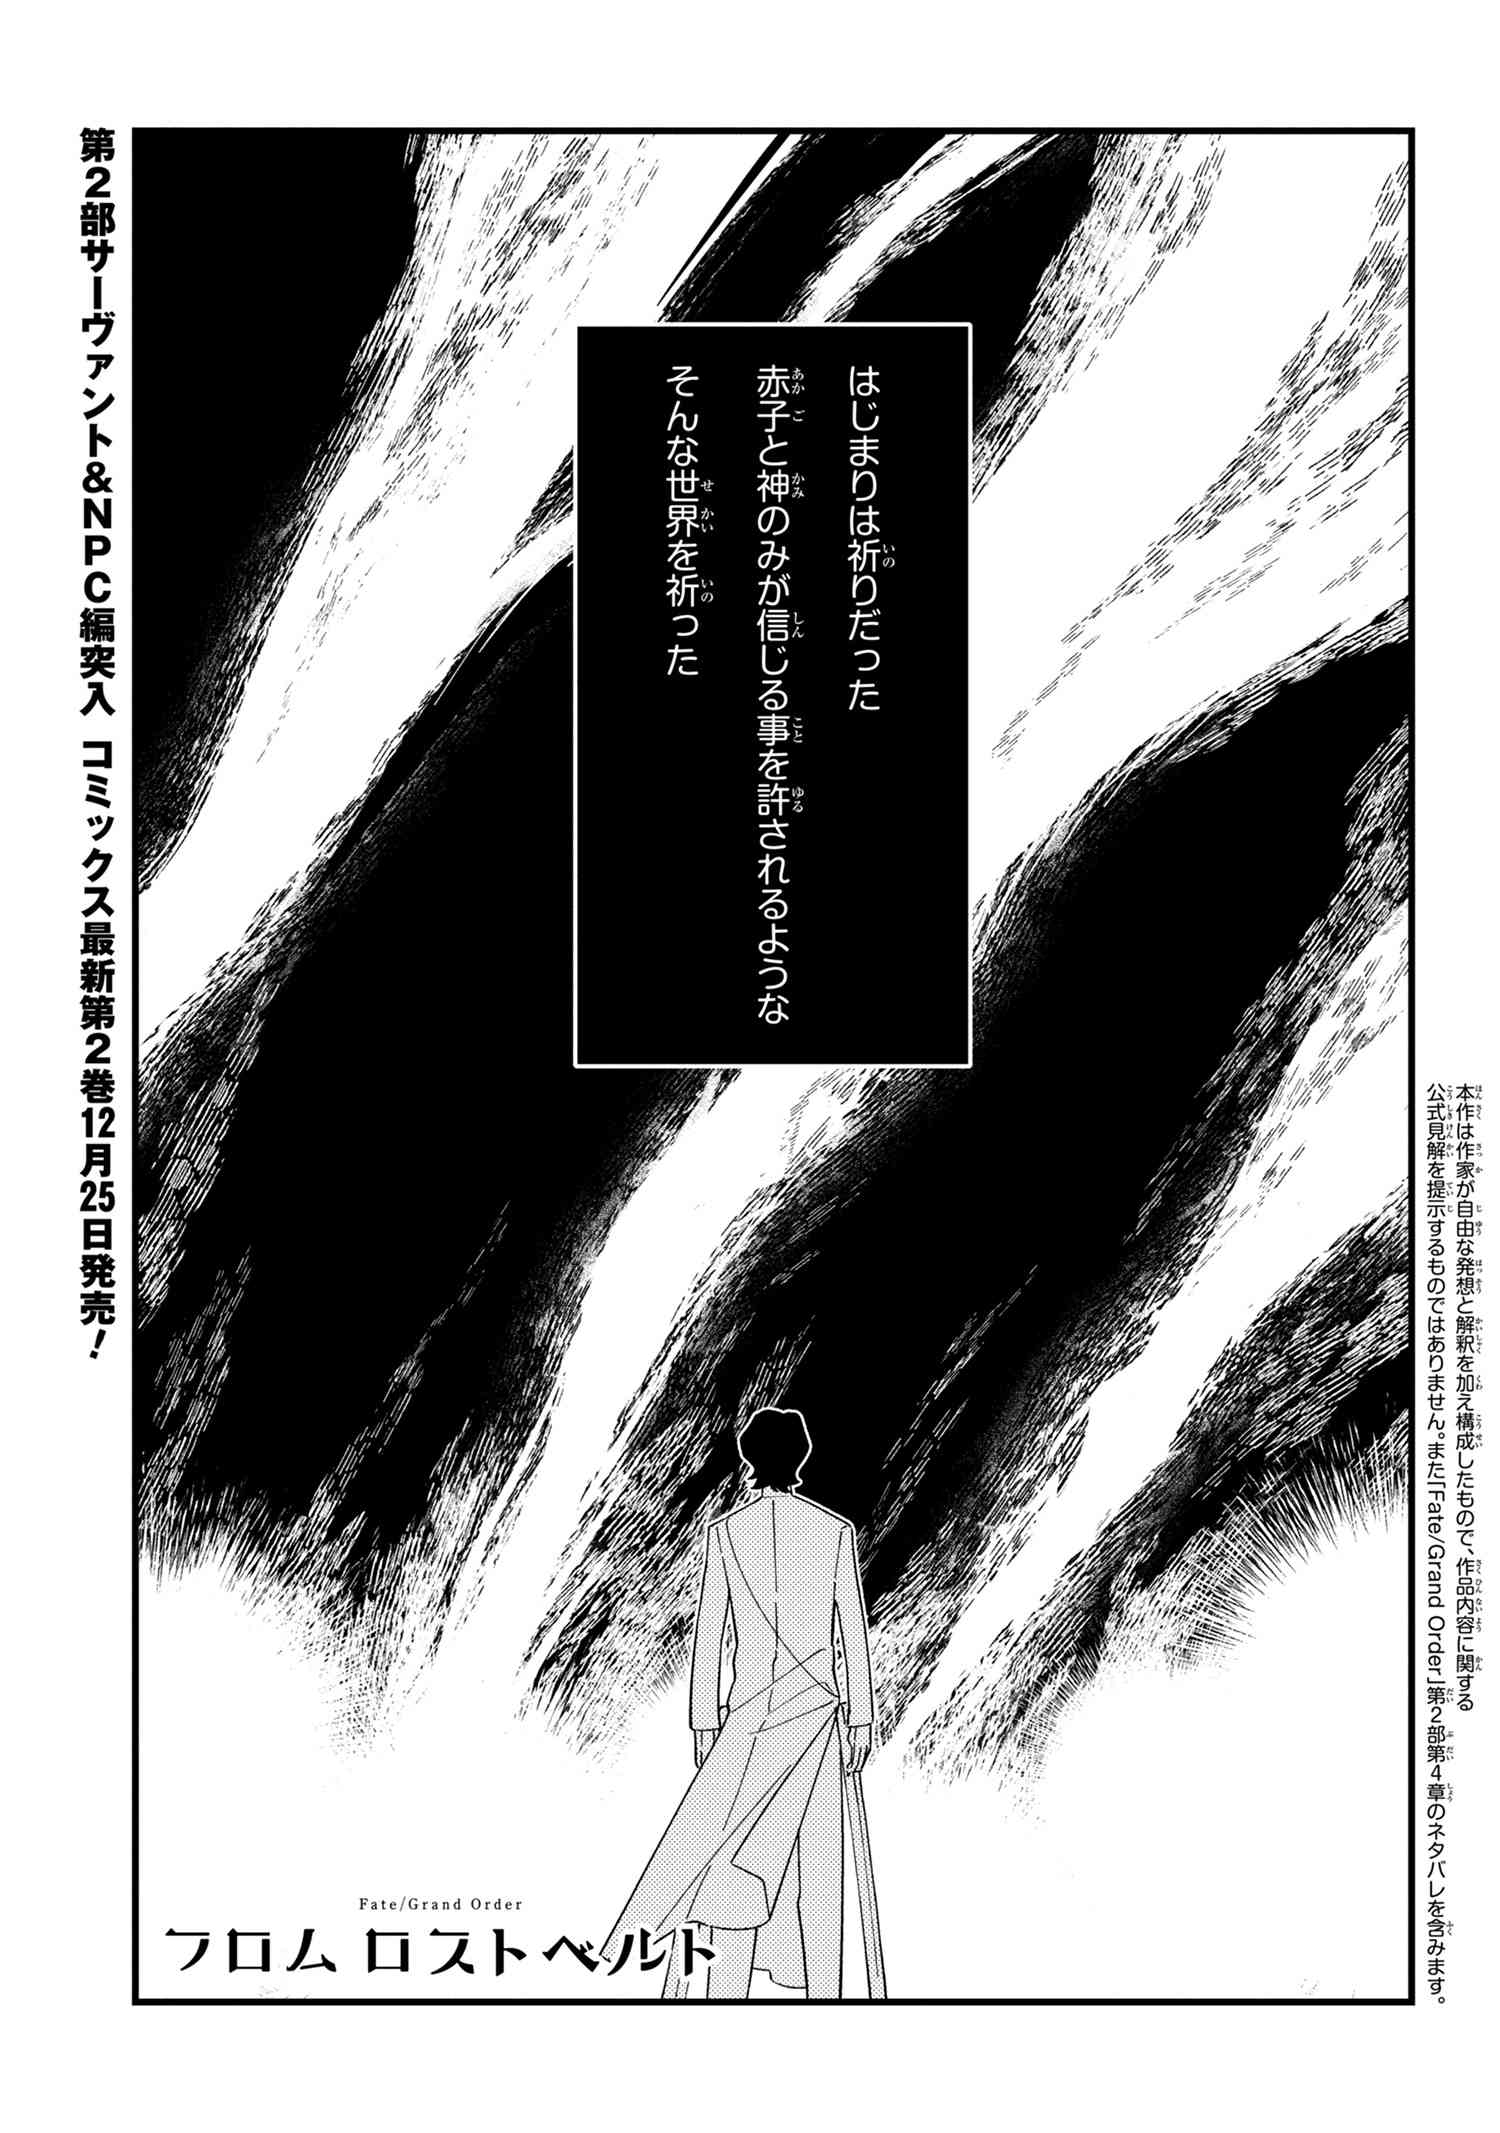 Fate Grand Order フロム ロストベルト 第11話 神様をさがして Type Moonコミックエース 無料で漫画が読めるオンラインマガジン